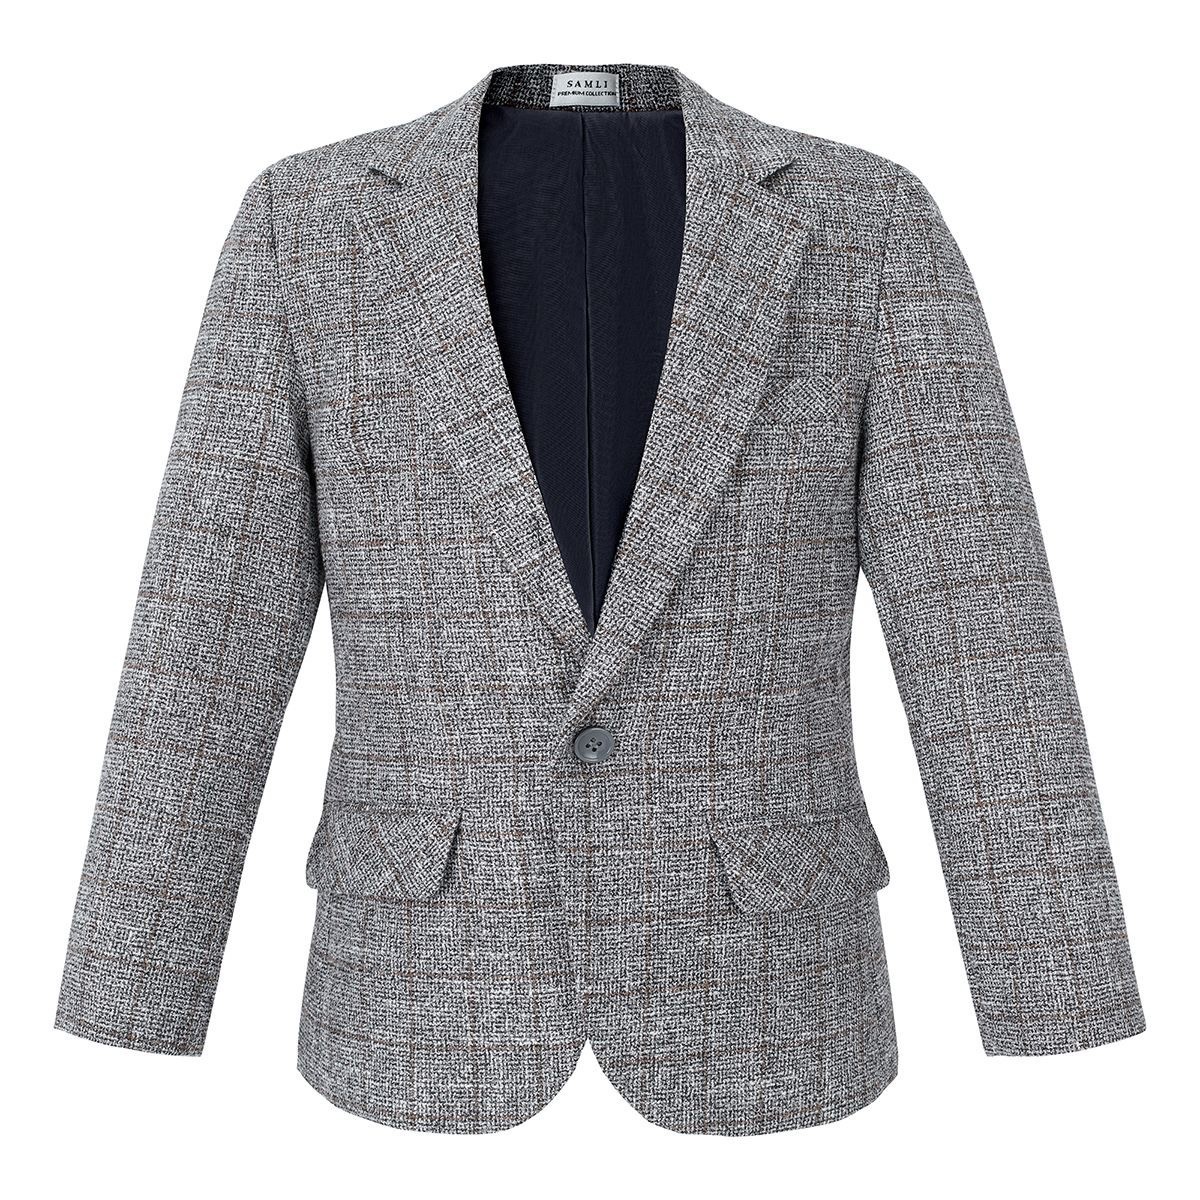 Jungen-Baumwoll-Tweed-ähnlicher Karo-Tailored-Fit-Blazer - Grey